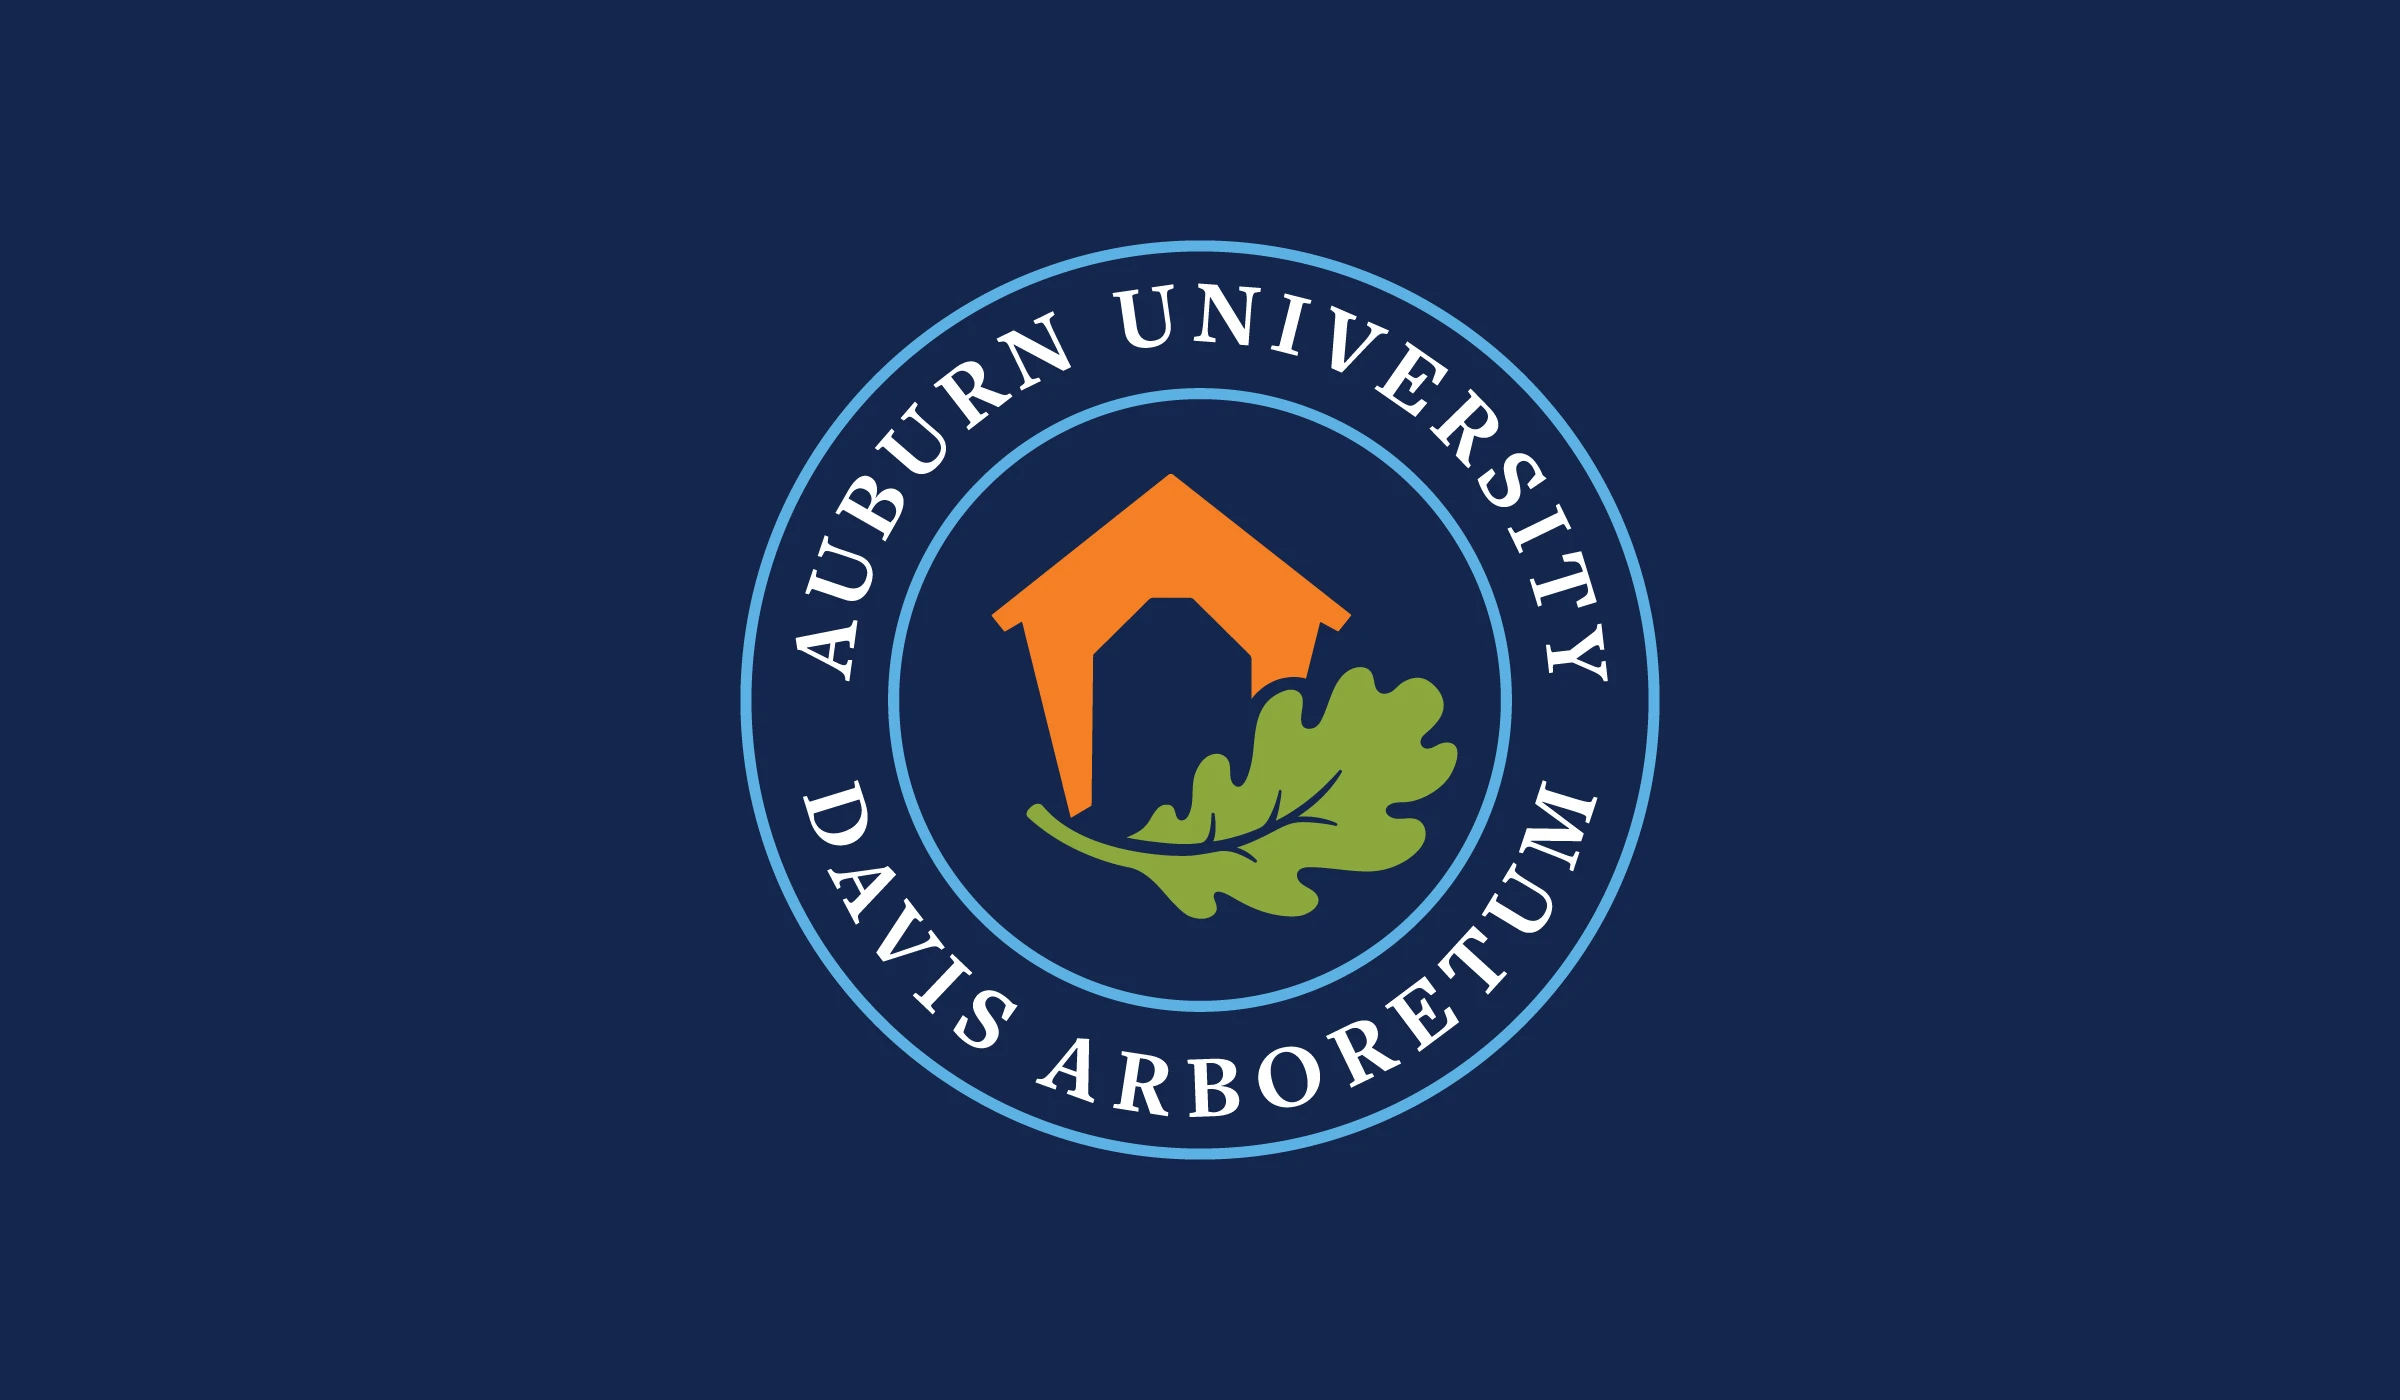 Auburn University Davis Arboretum logo branding flier